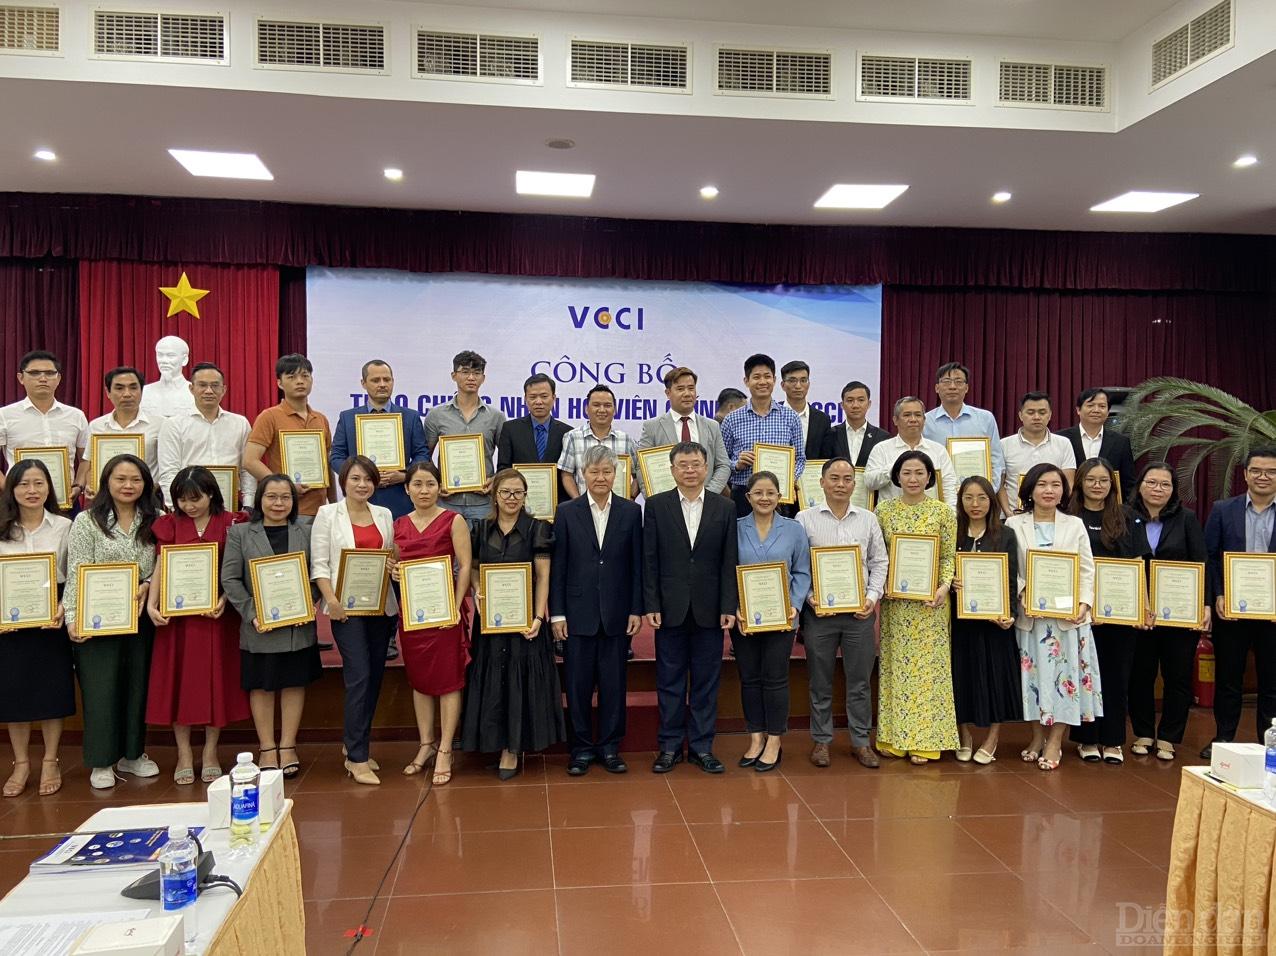 Ông Võ Tân Thành - Phó Chủ tịch VCCI và ông Trần Ngọc Liêm - Giám đốc VCCI HCM chụp ảnh lưu niệm với các doanh nghiệp Hội viên - Ảnh: Đình Đại.